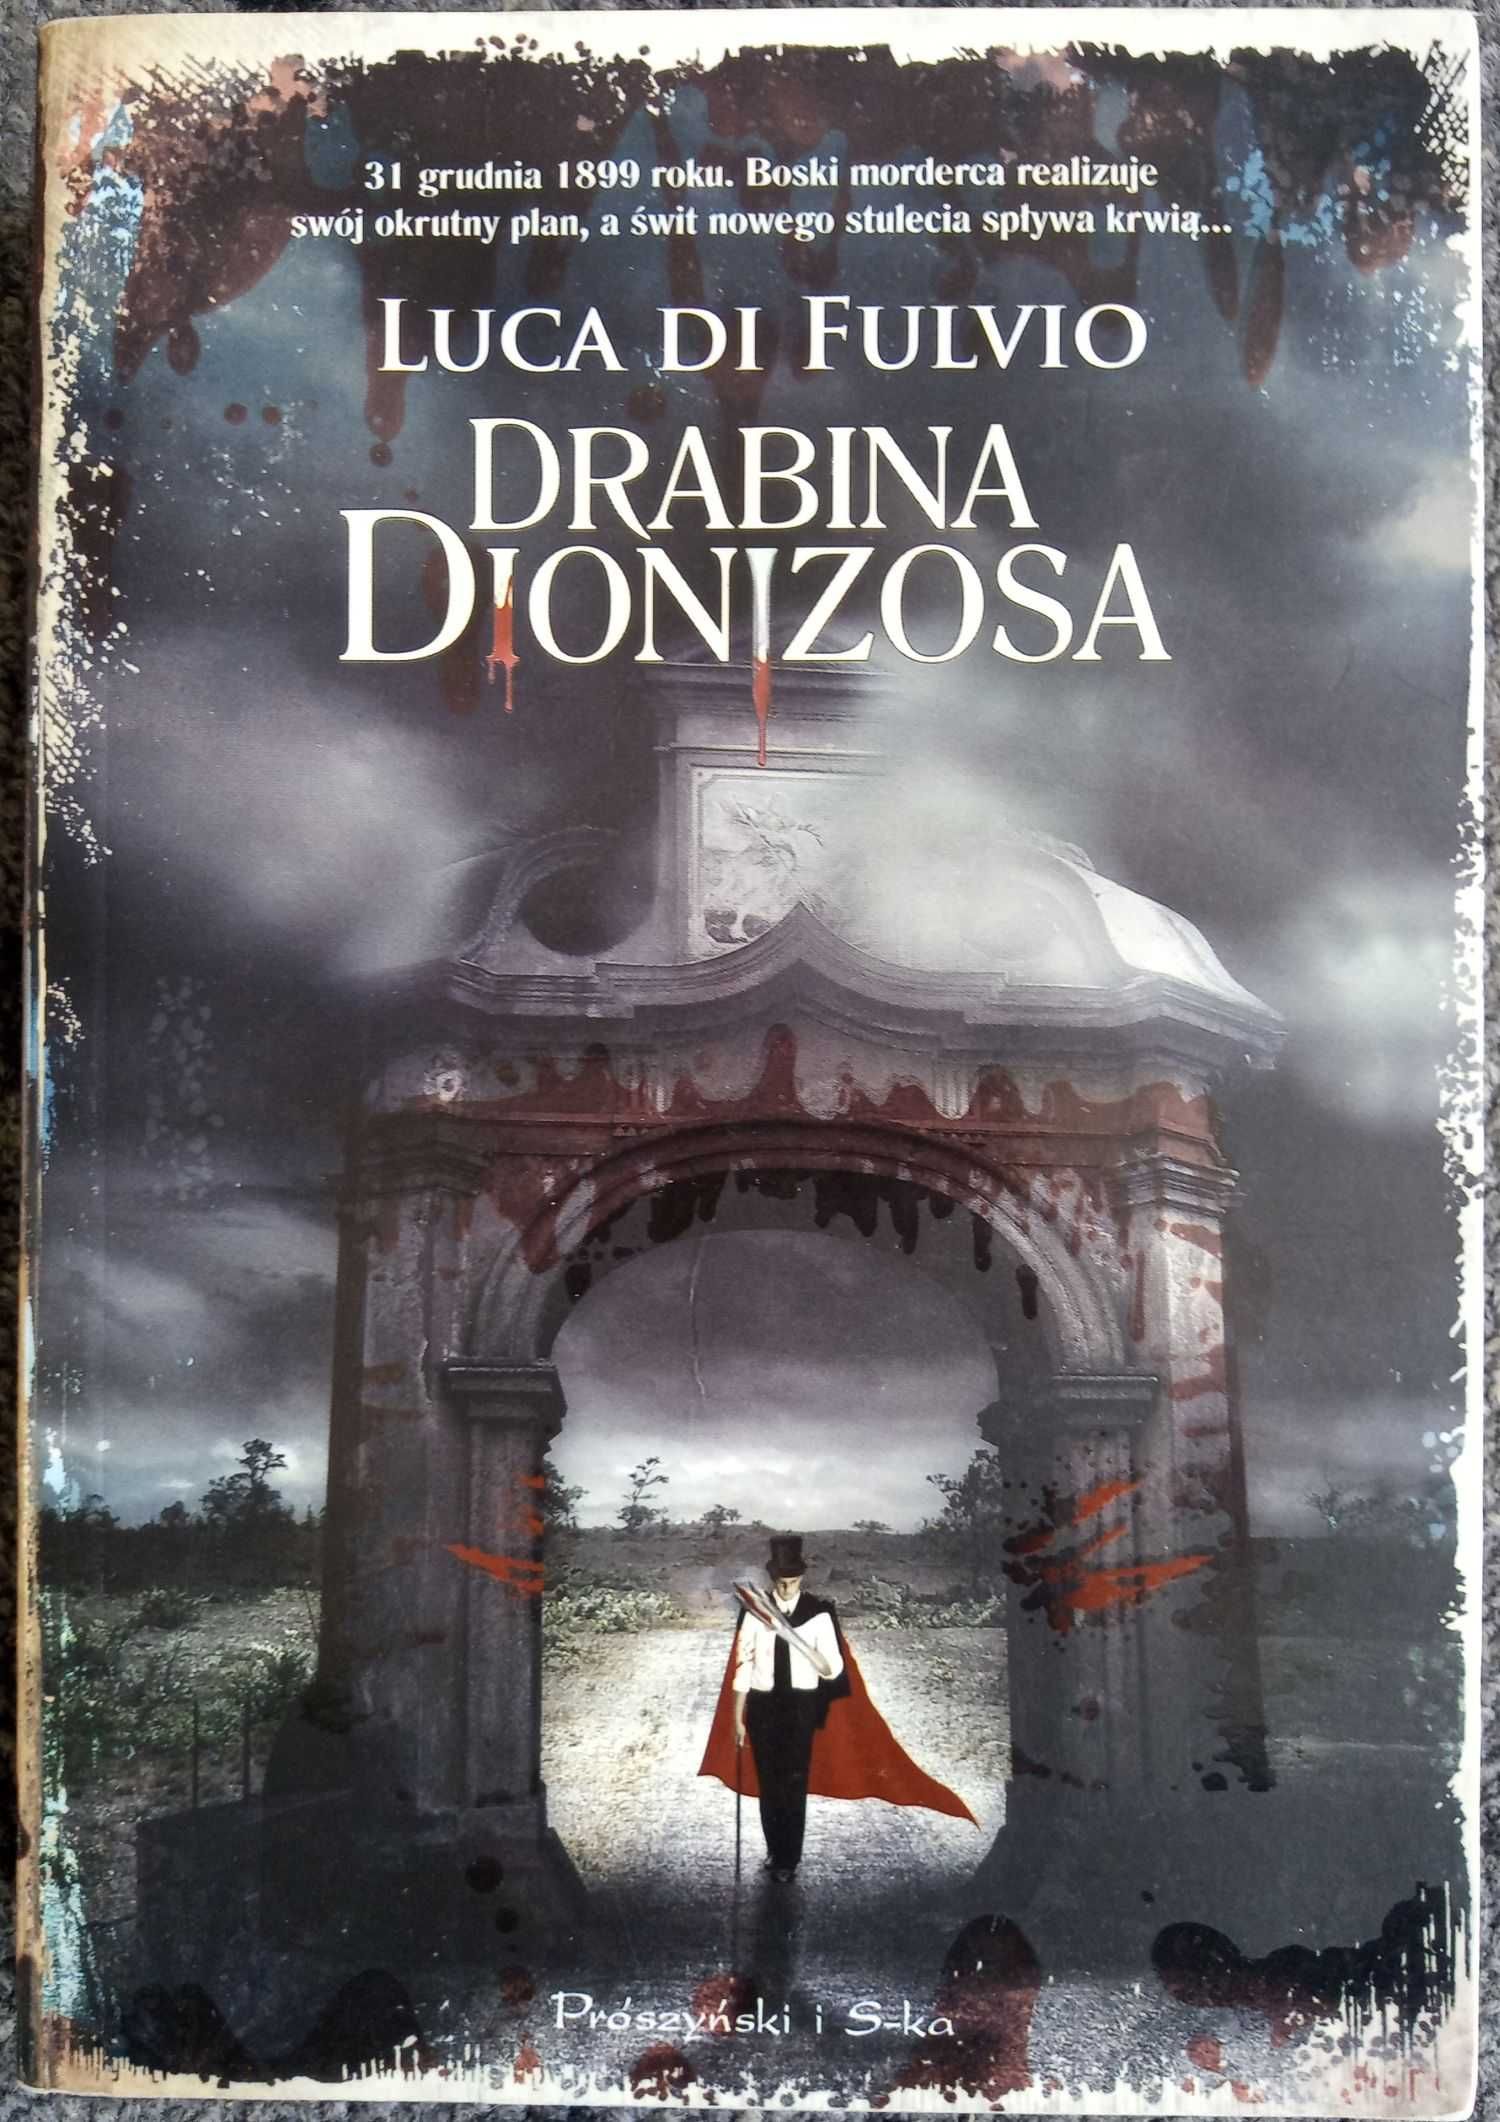 A Fulvio Luca Di - Drabina Dionizosa